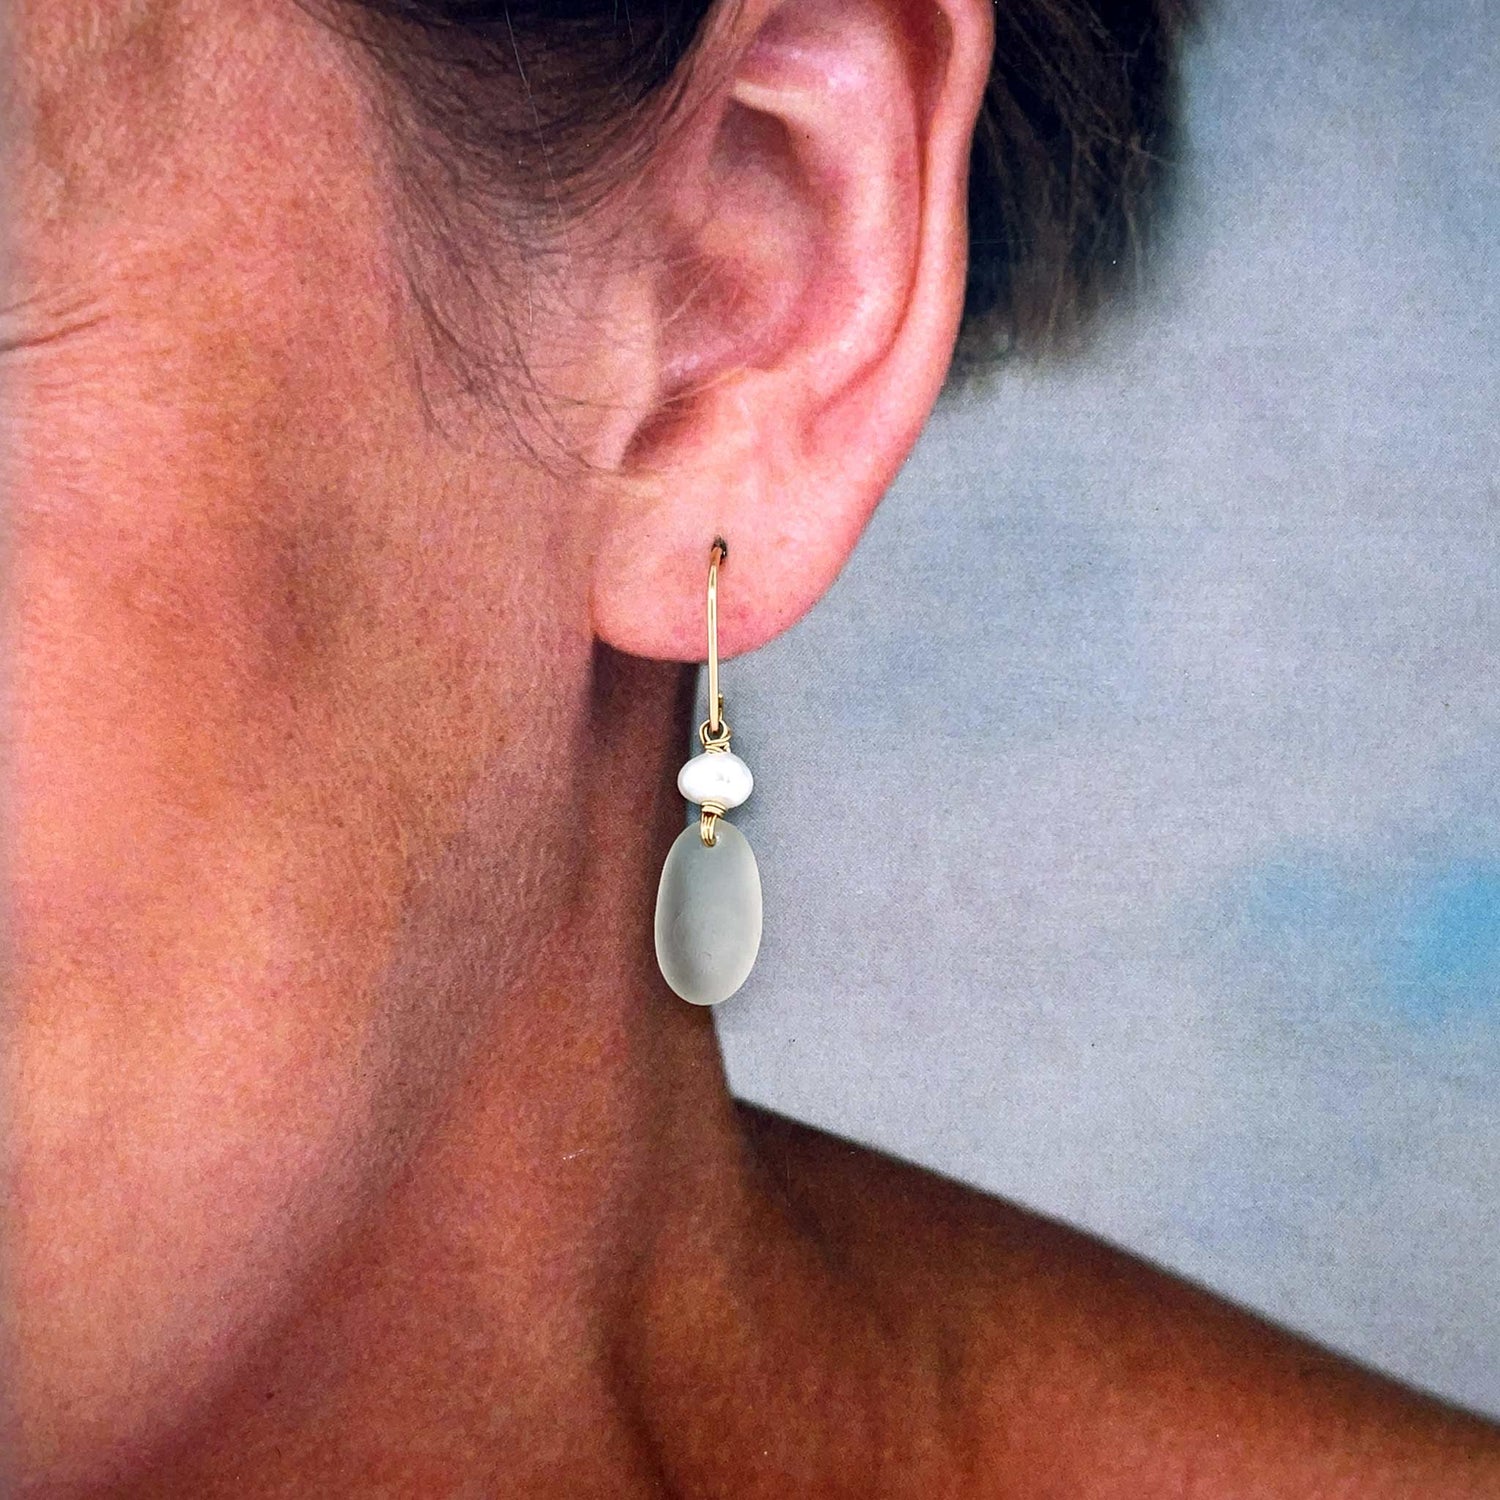 clear earrings everyday earrings